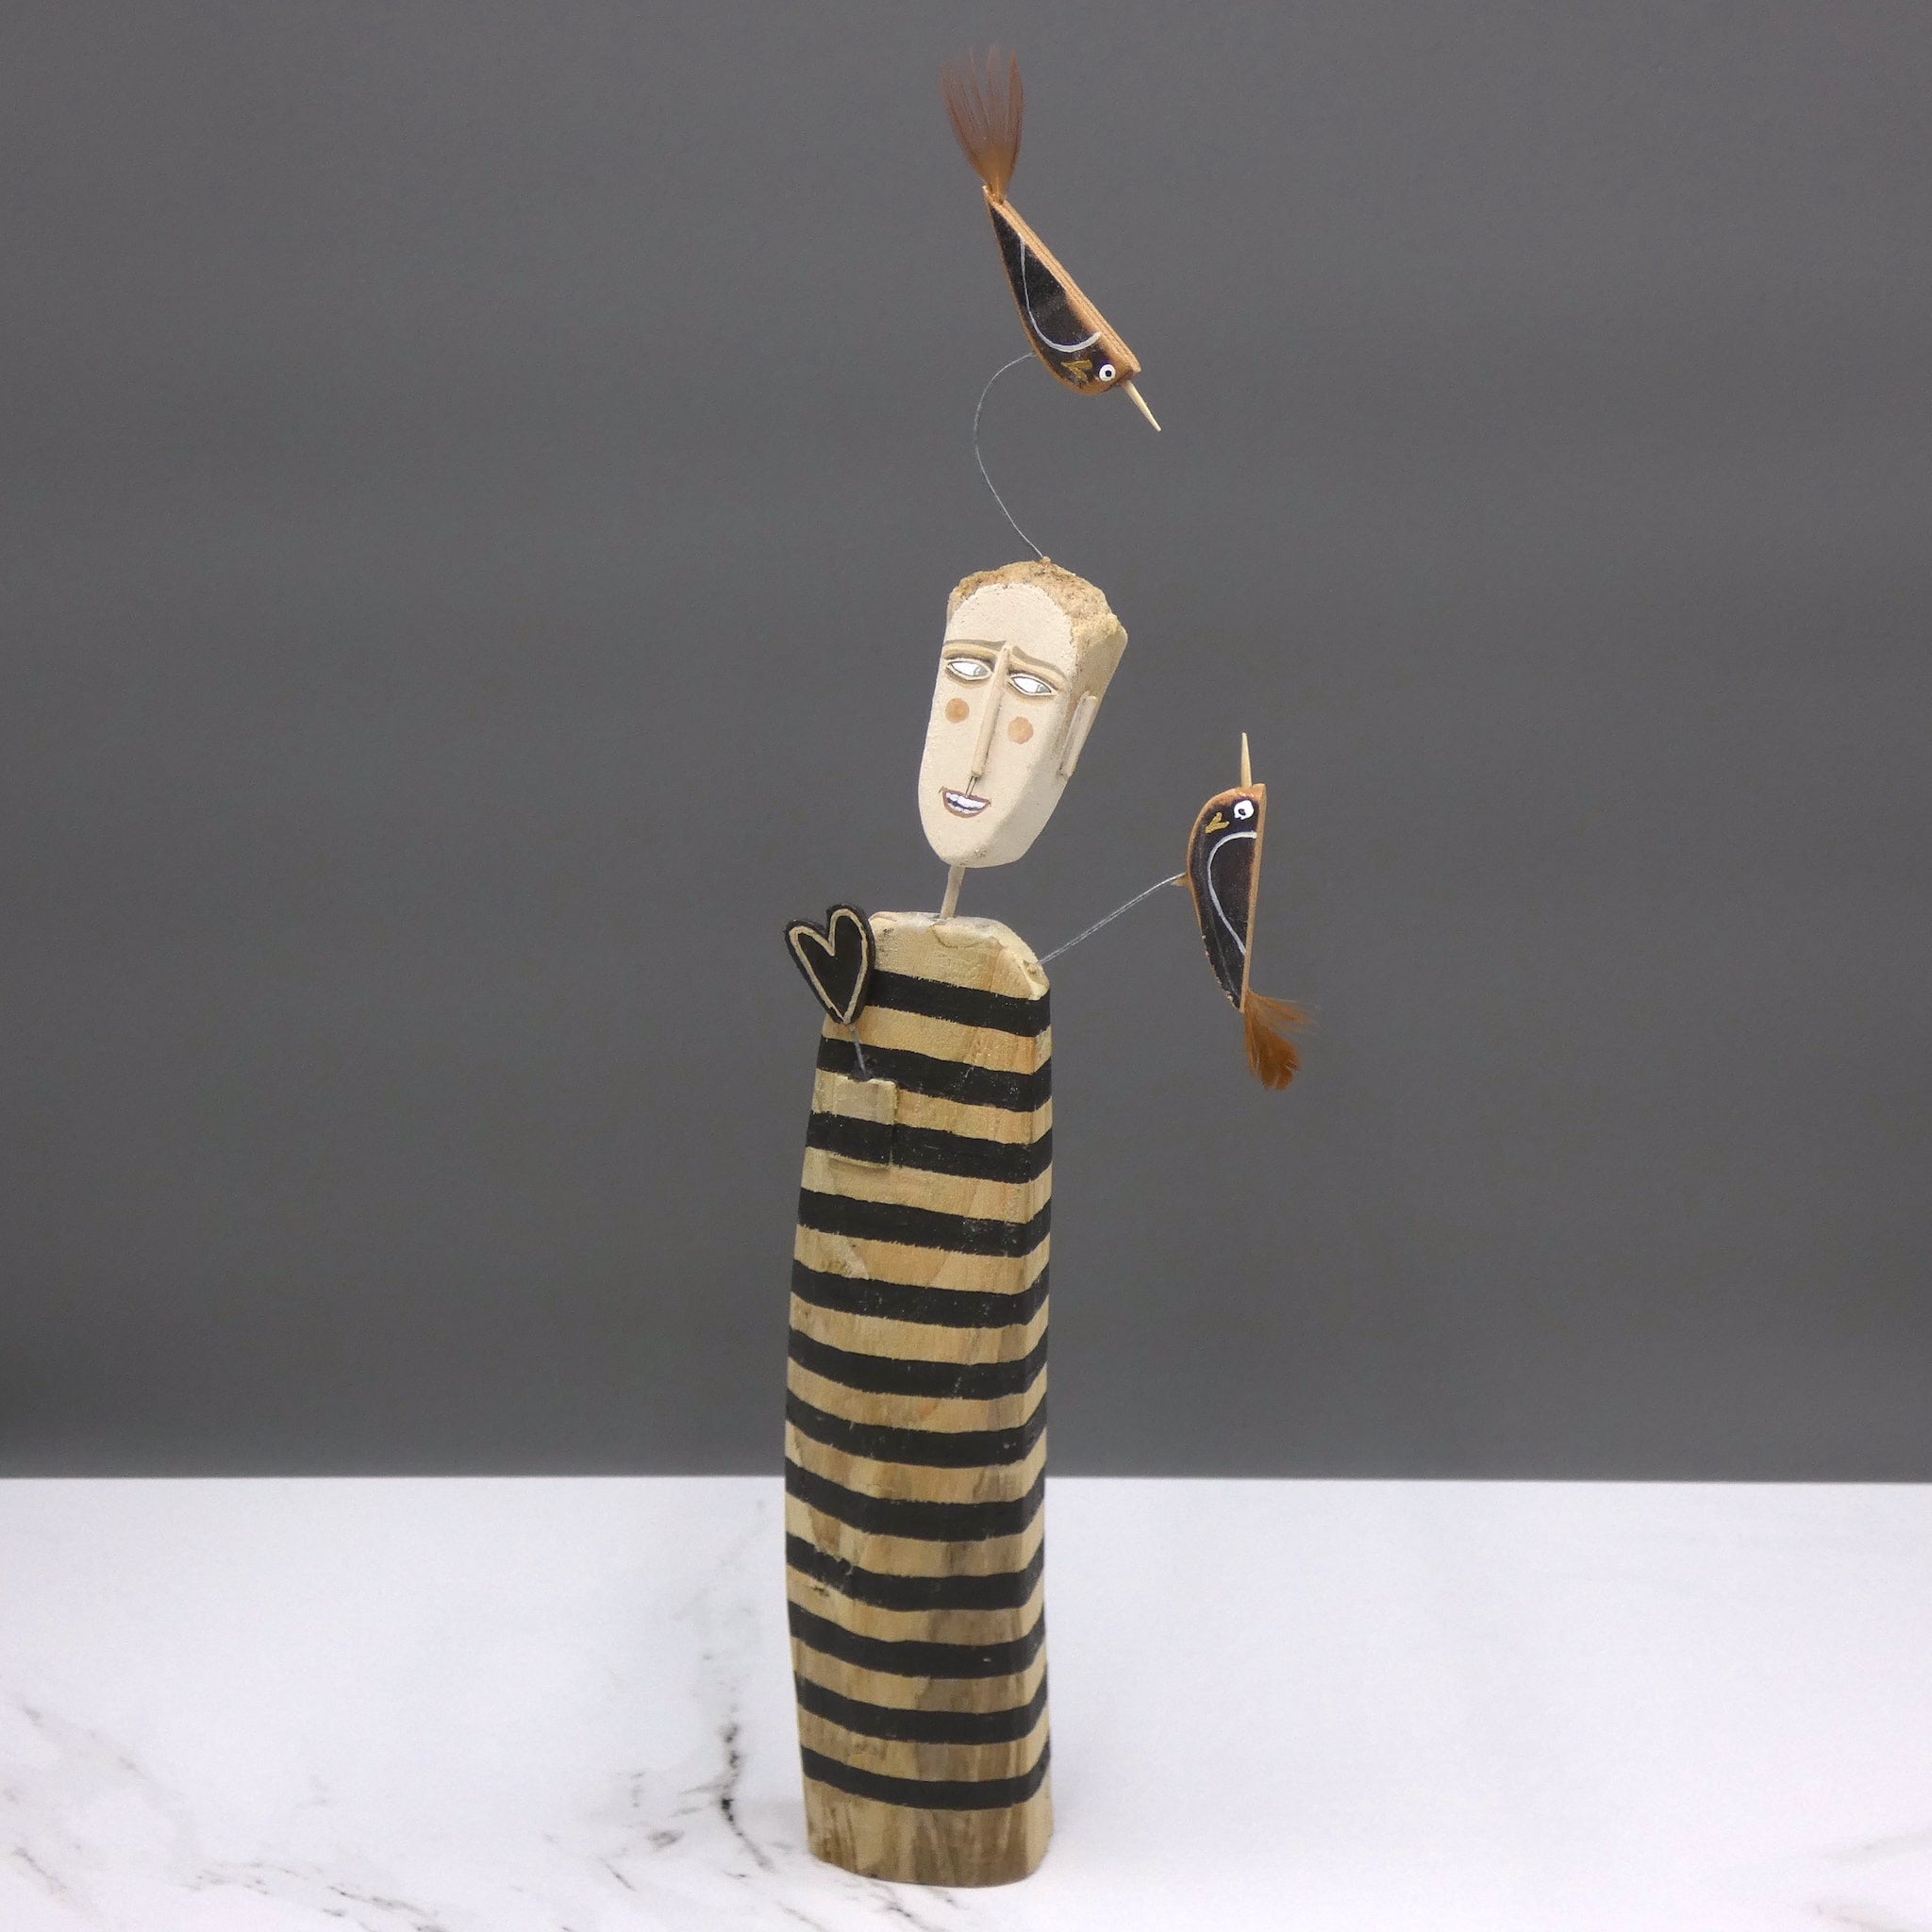 Driftwood sculpture of man with two birds by artist Lynn Muir